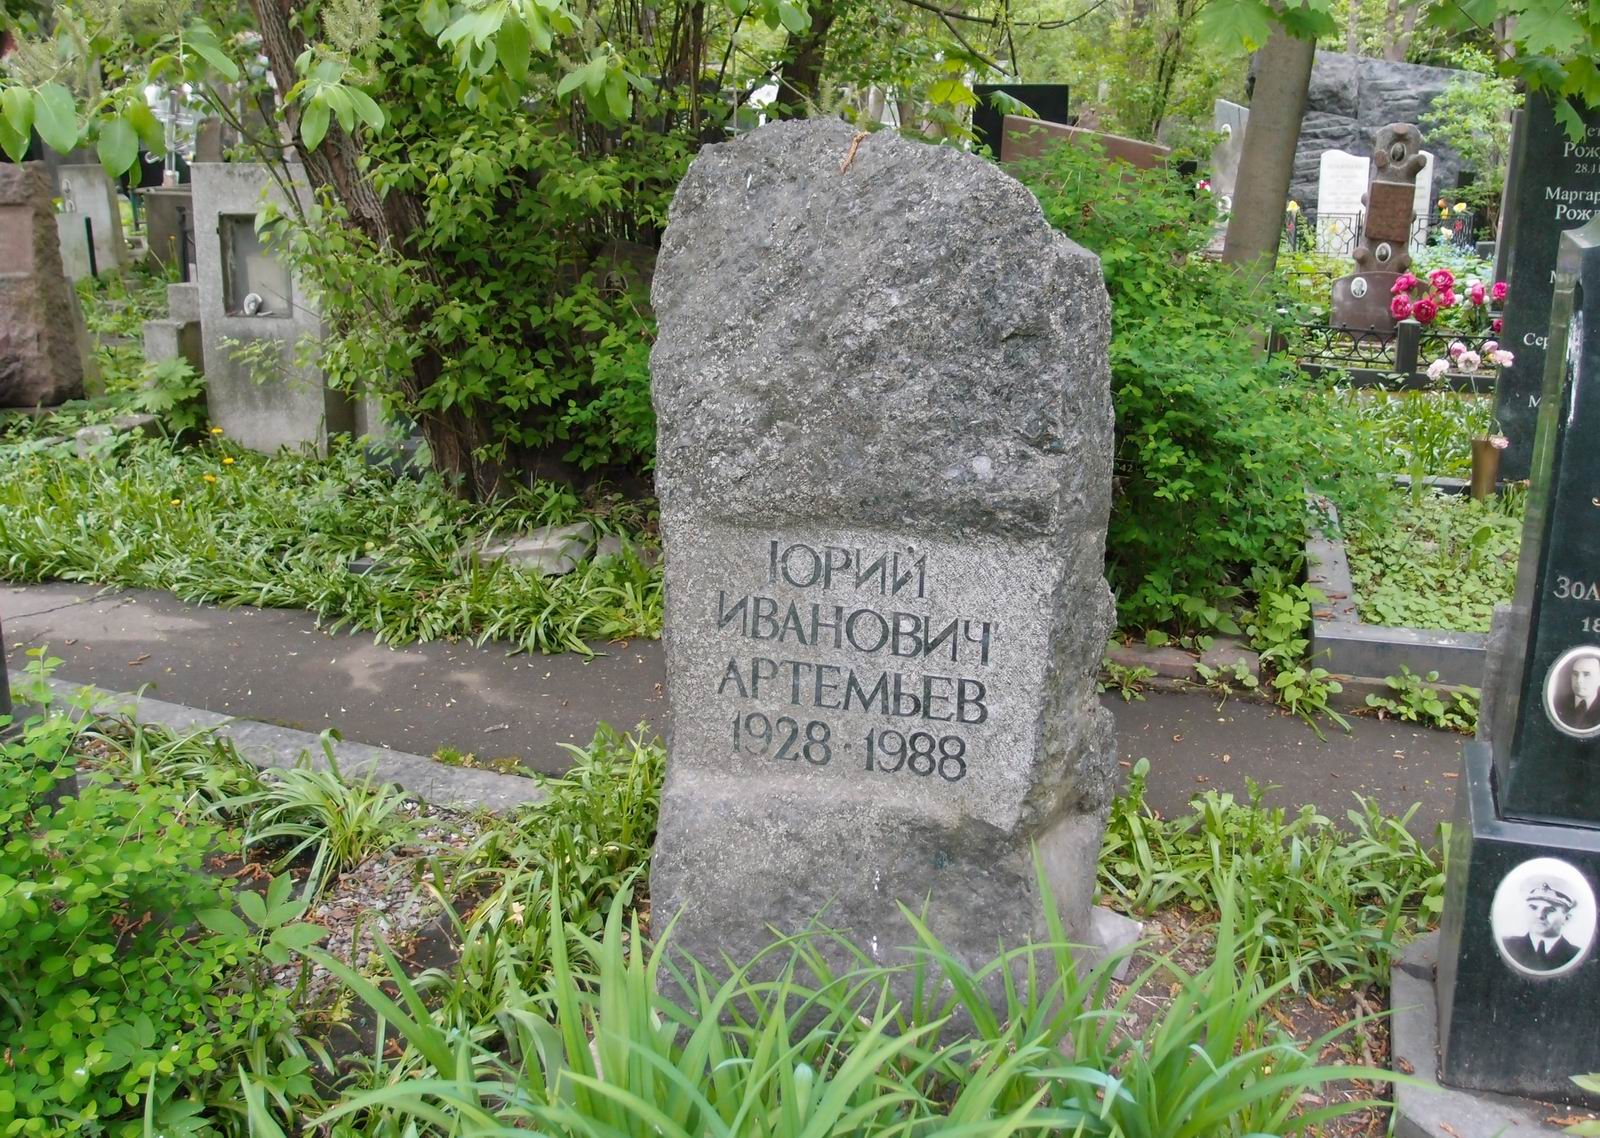 Памятник на могиле Артемьева Ю.И. (1928-1988), на Новодевичьем кладбище (4-30-10).